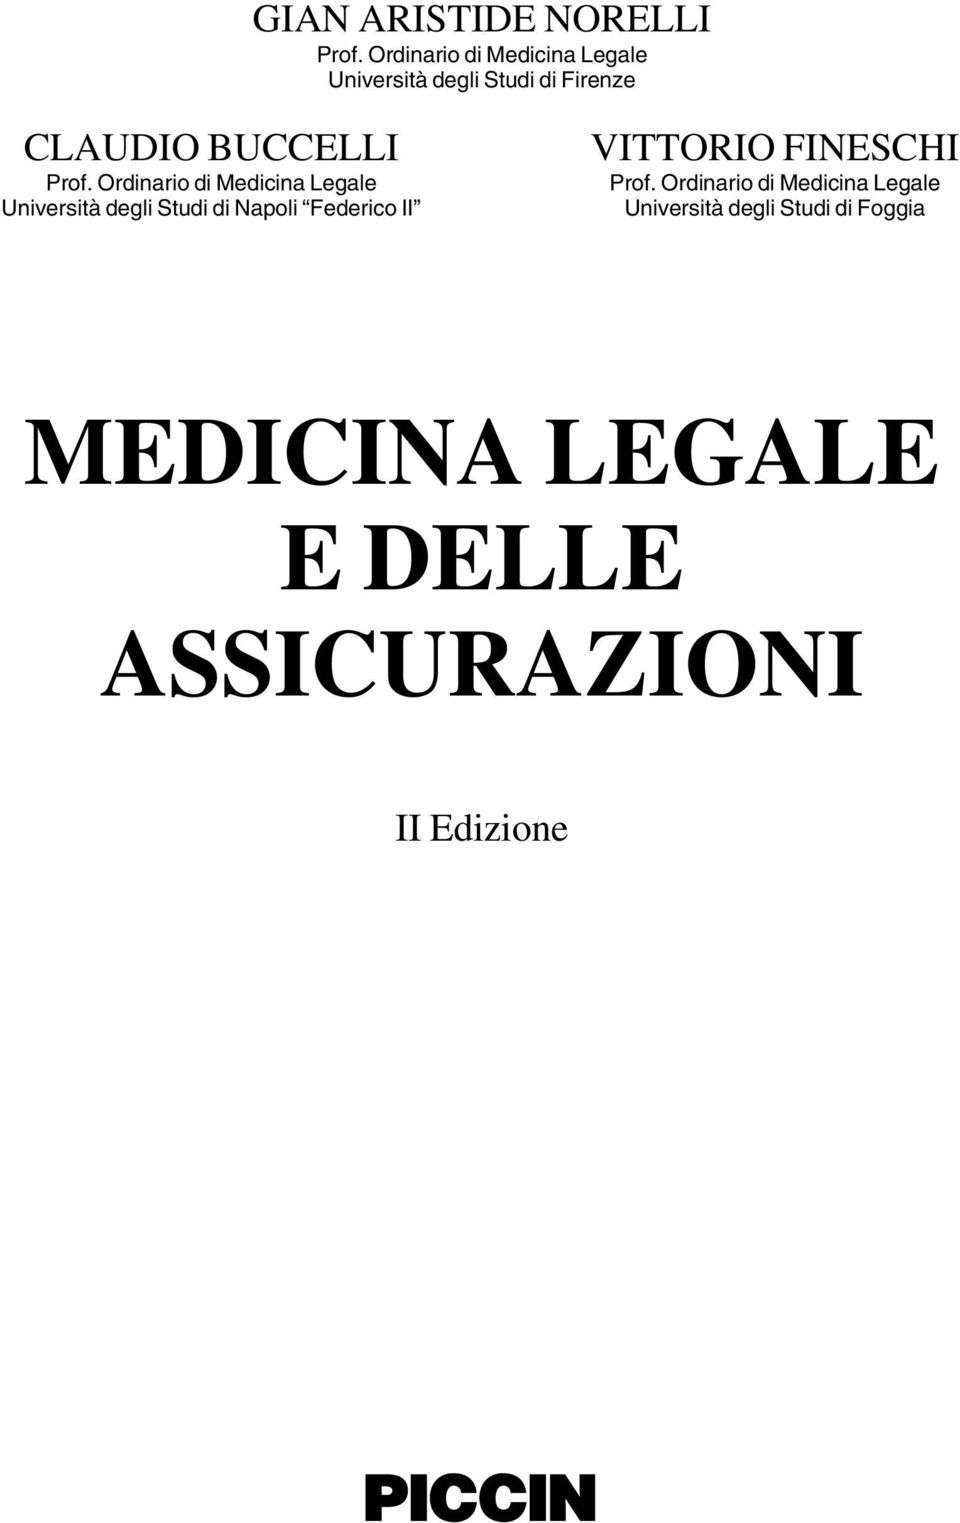 Prof. Ordinario di Medicina Legale Università degli Studi di Napoli Federico II